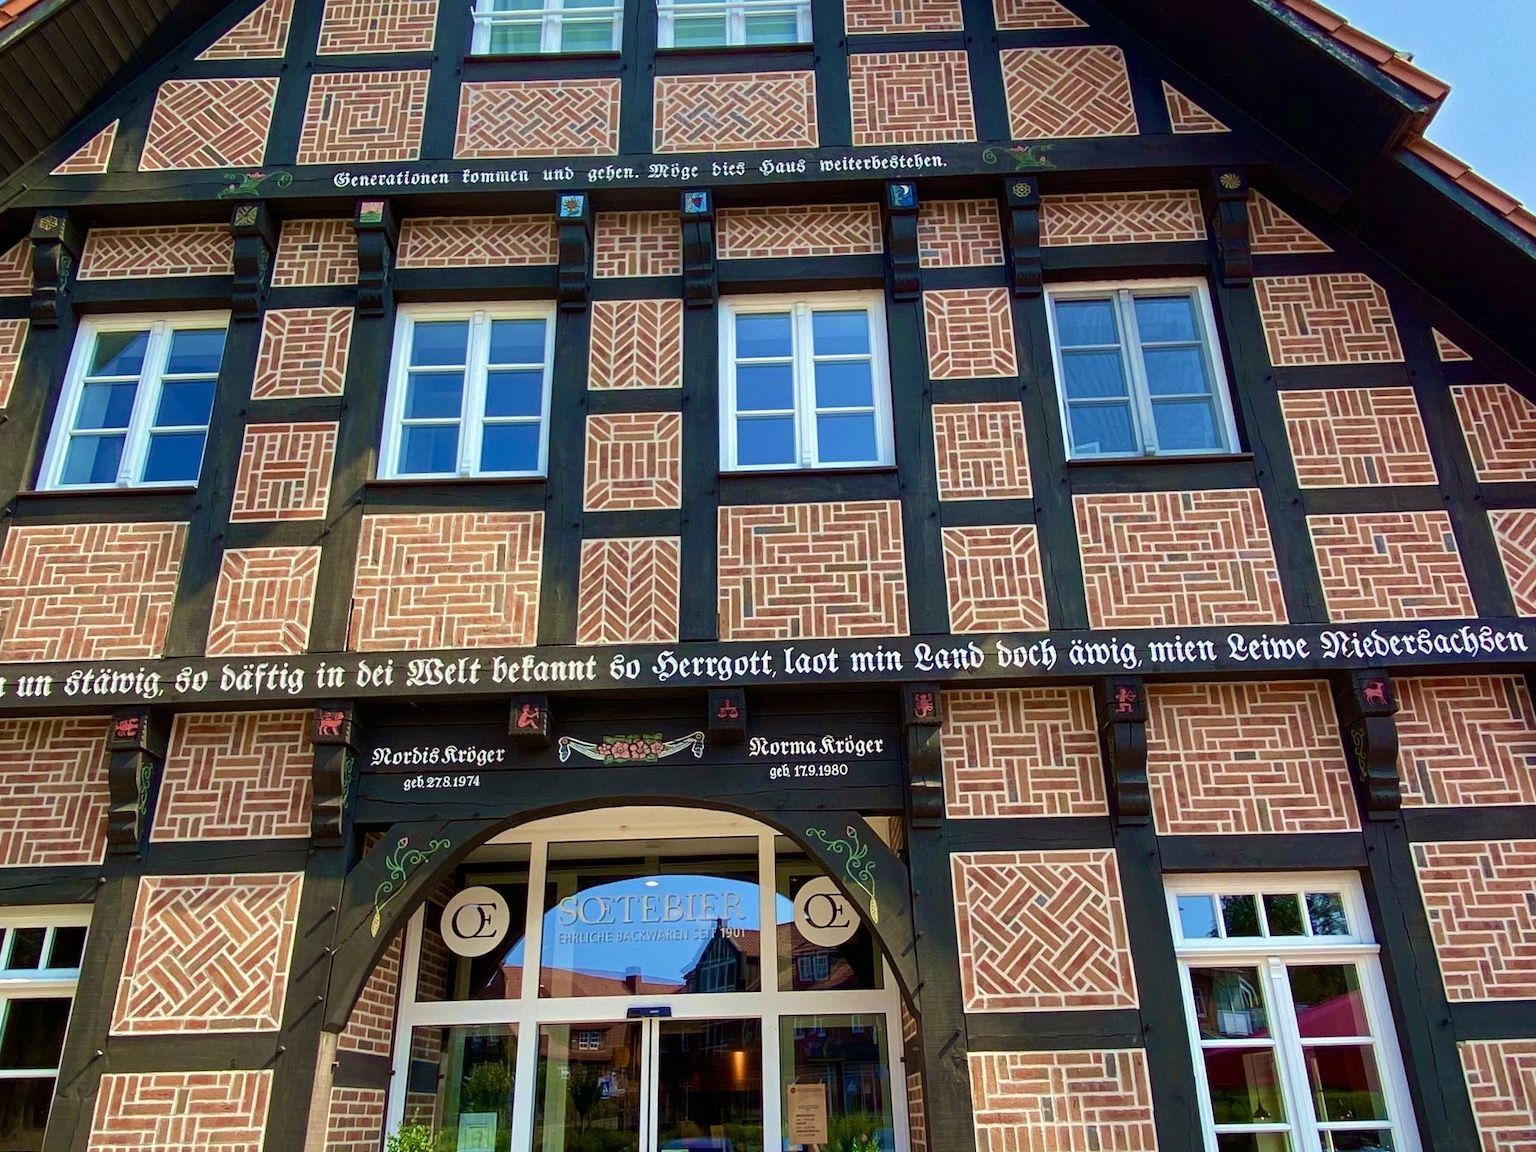 Met vakwerkhuizen vind je in de dorpen van de Lüneburger Heide veel typische Noord-Duitse architectuur. Foto: Sascha Tegtmeyer